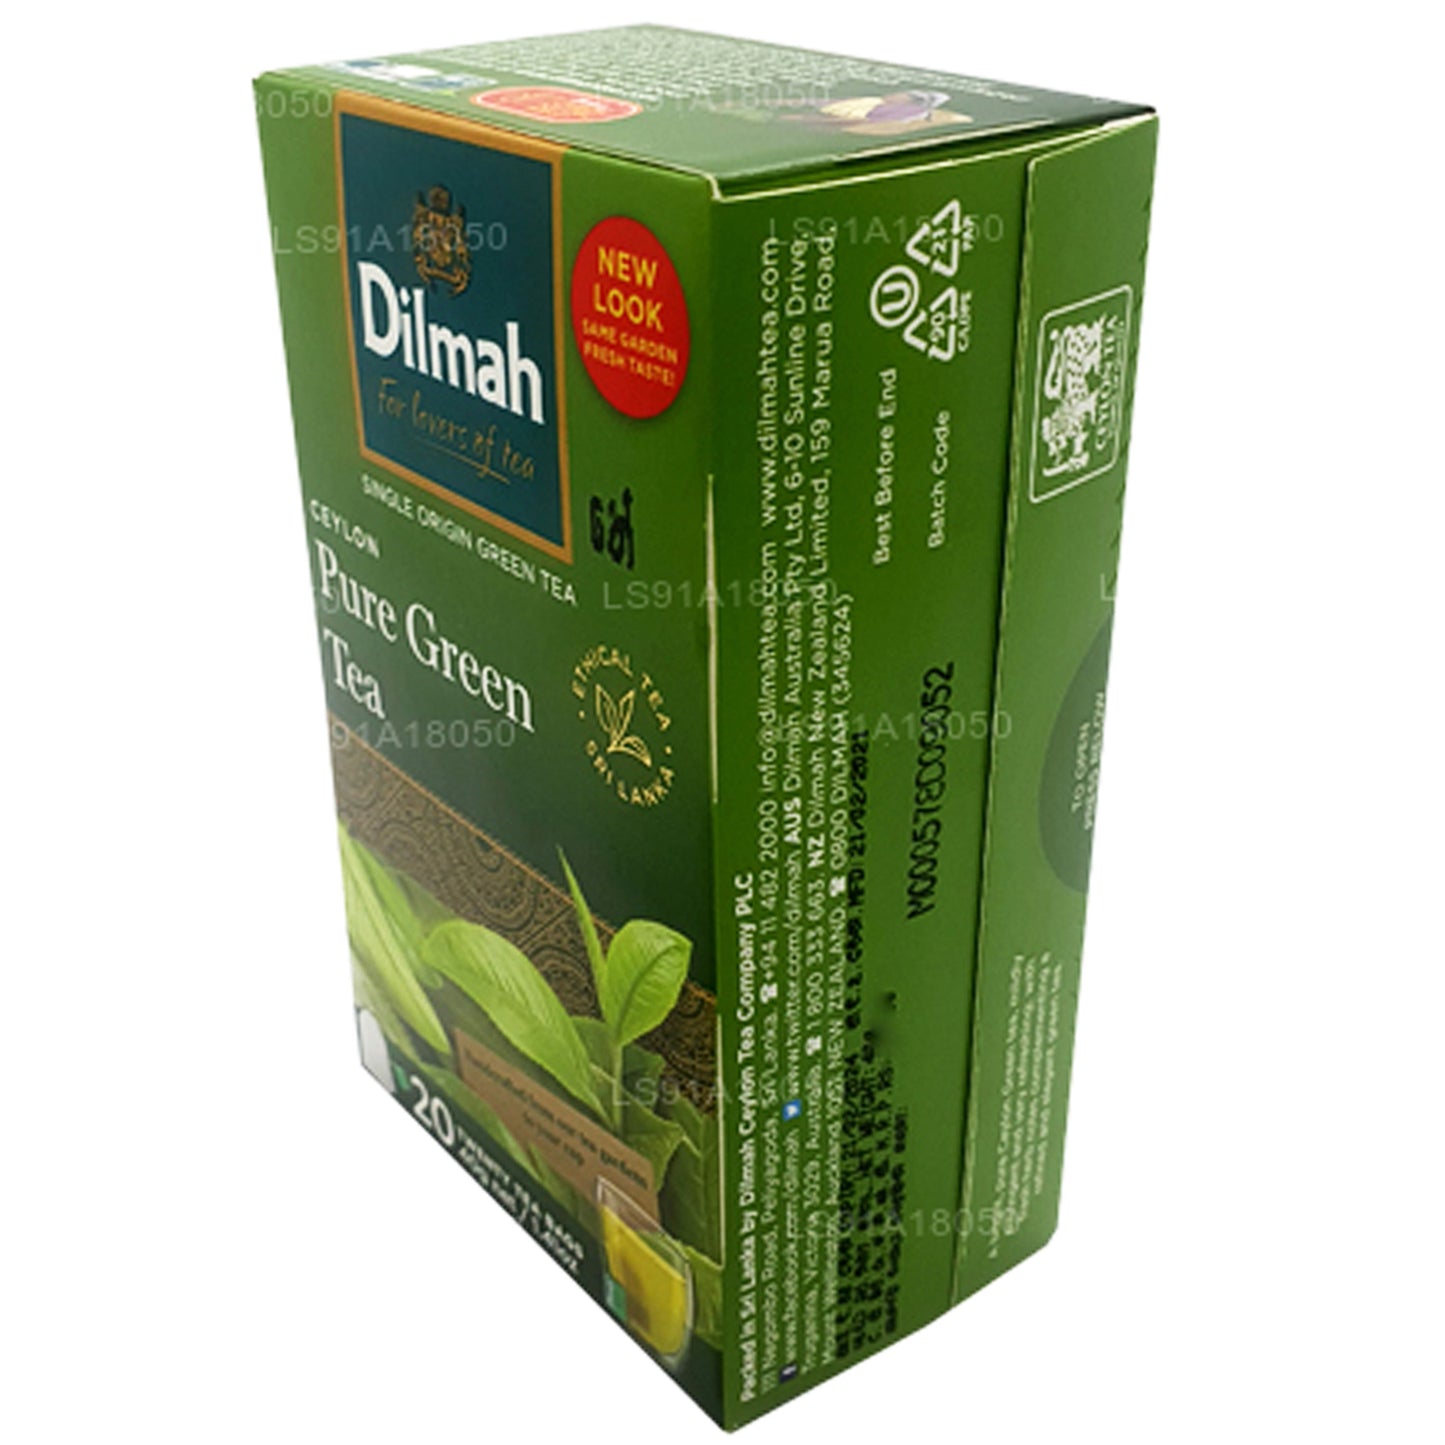 Dilmah Saf Seylan Yeşil Çay (40g) 20 Poşet Çay